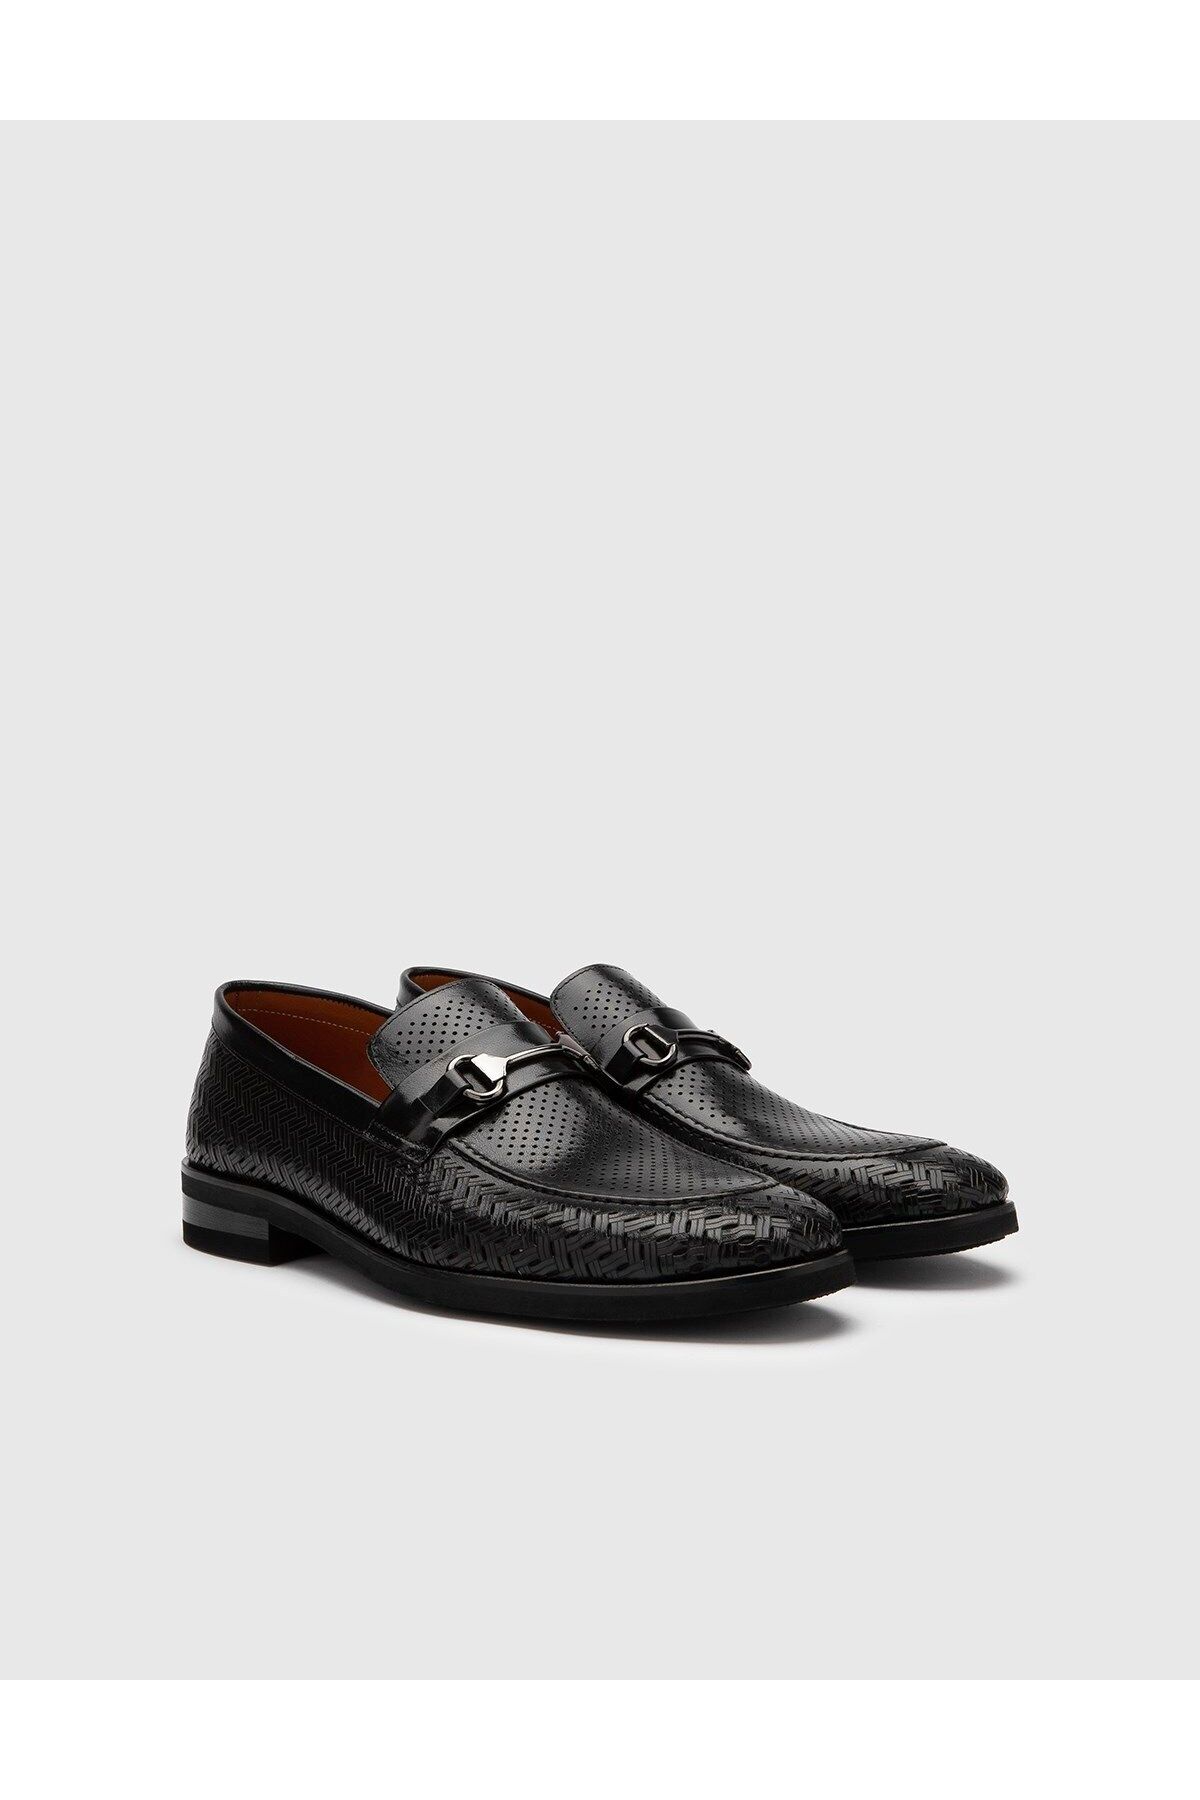 İlvi Fingal Hakiki Buffalo Deri Erkek Siyah Klasik Ayakkabı